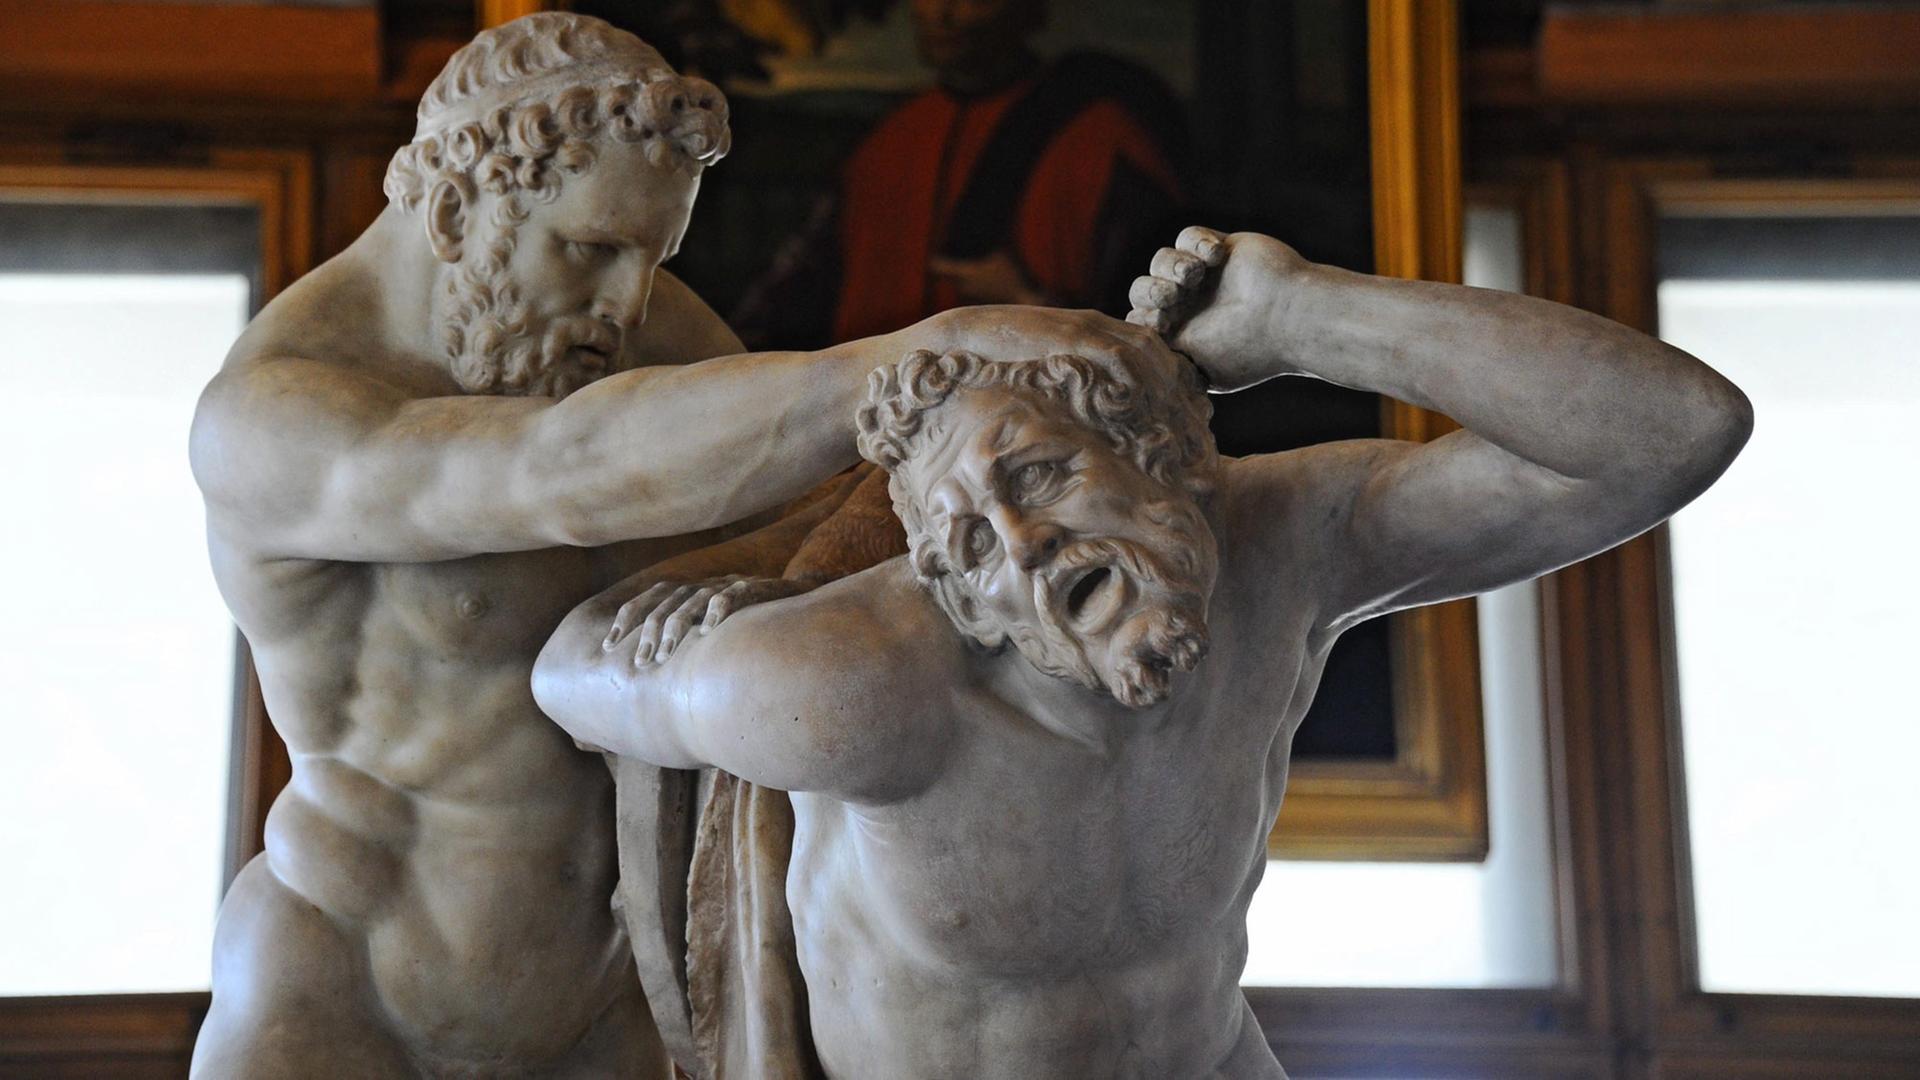 Die Marmorstatuen-Gruppe "Herkules und Nessus" (um 1600) des flämisch-italienischen Bildhauers Jean de Boulogne (1529-1608), genannt "Giambologna", steht in der Galerie der Uffizien in Florenz. Sie stellt eine Szene aus der griechischen Mythologie dar, in der Herkules den Zentauren Nessus schlägt.